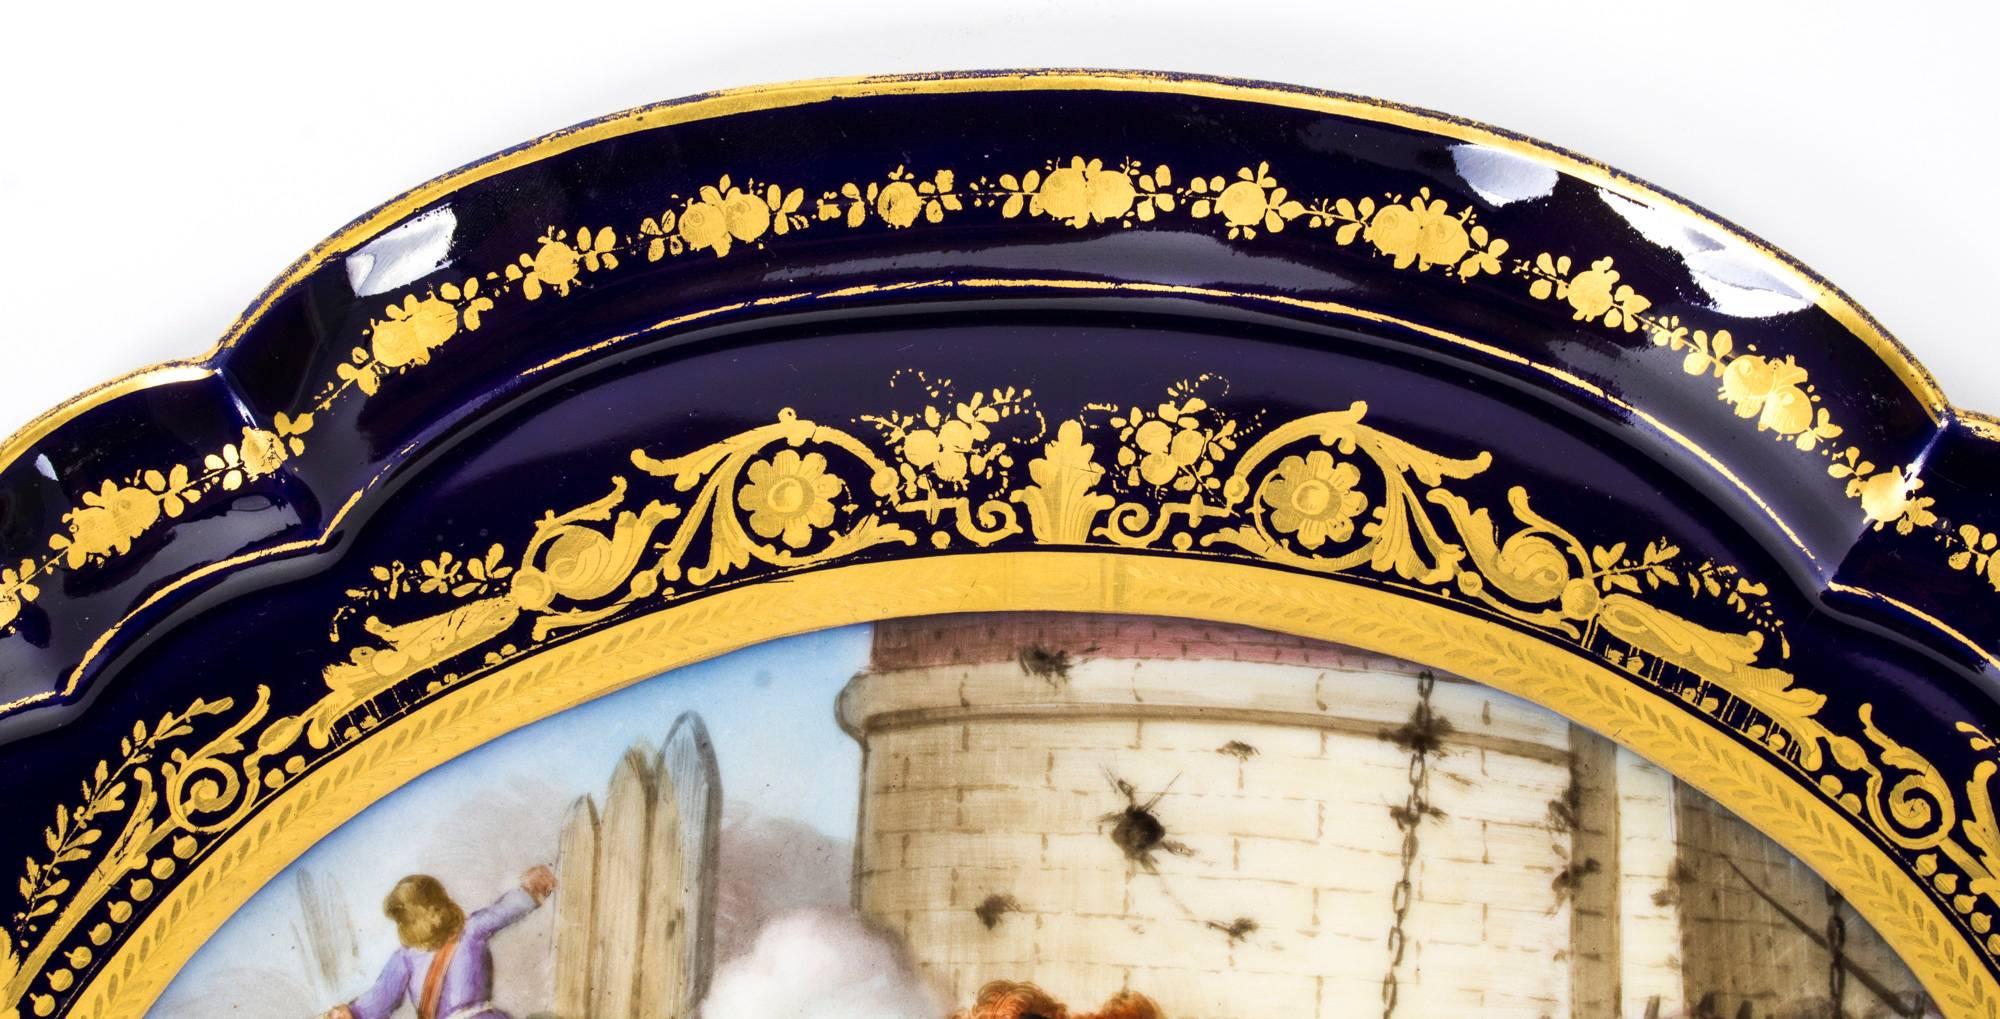 Il s'agit d'un fabuleux plateau ovale à deux anses en porcelaine de Sèvres, datant du milieu du 19e siècle.

Magnifiquement peinte à la main et commémorant une scène de bataille de 1677, la 